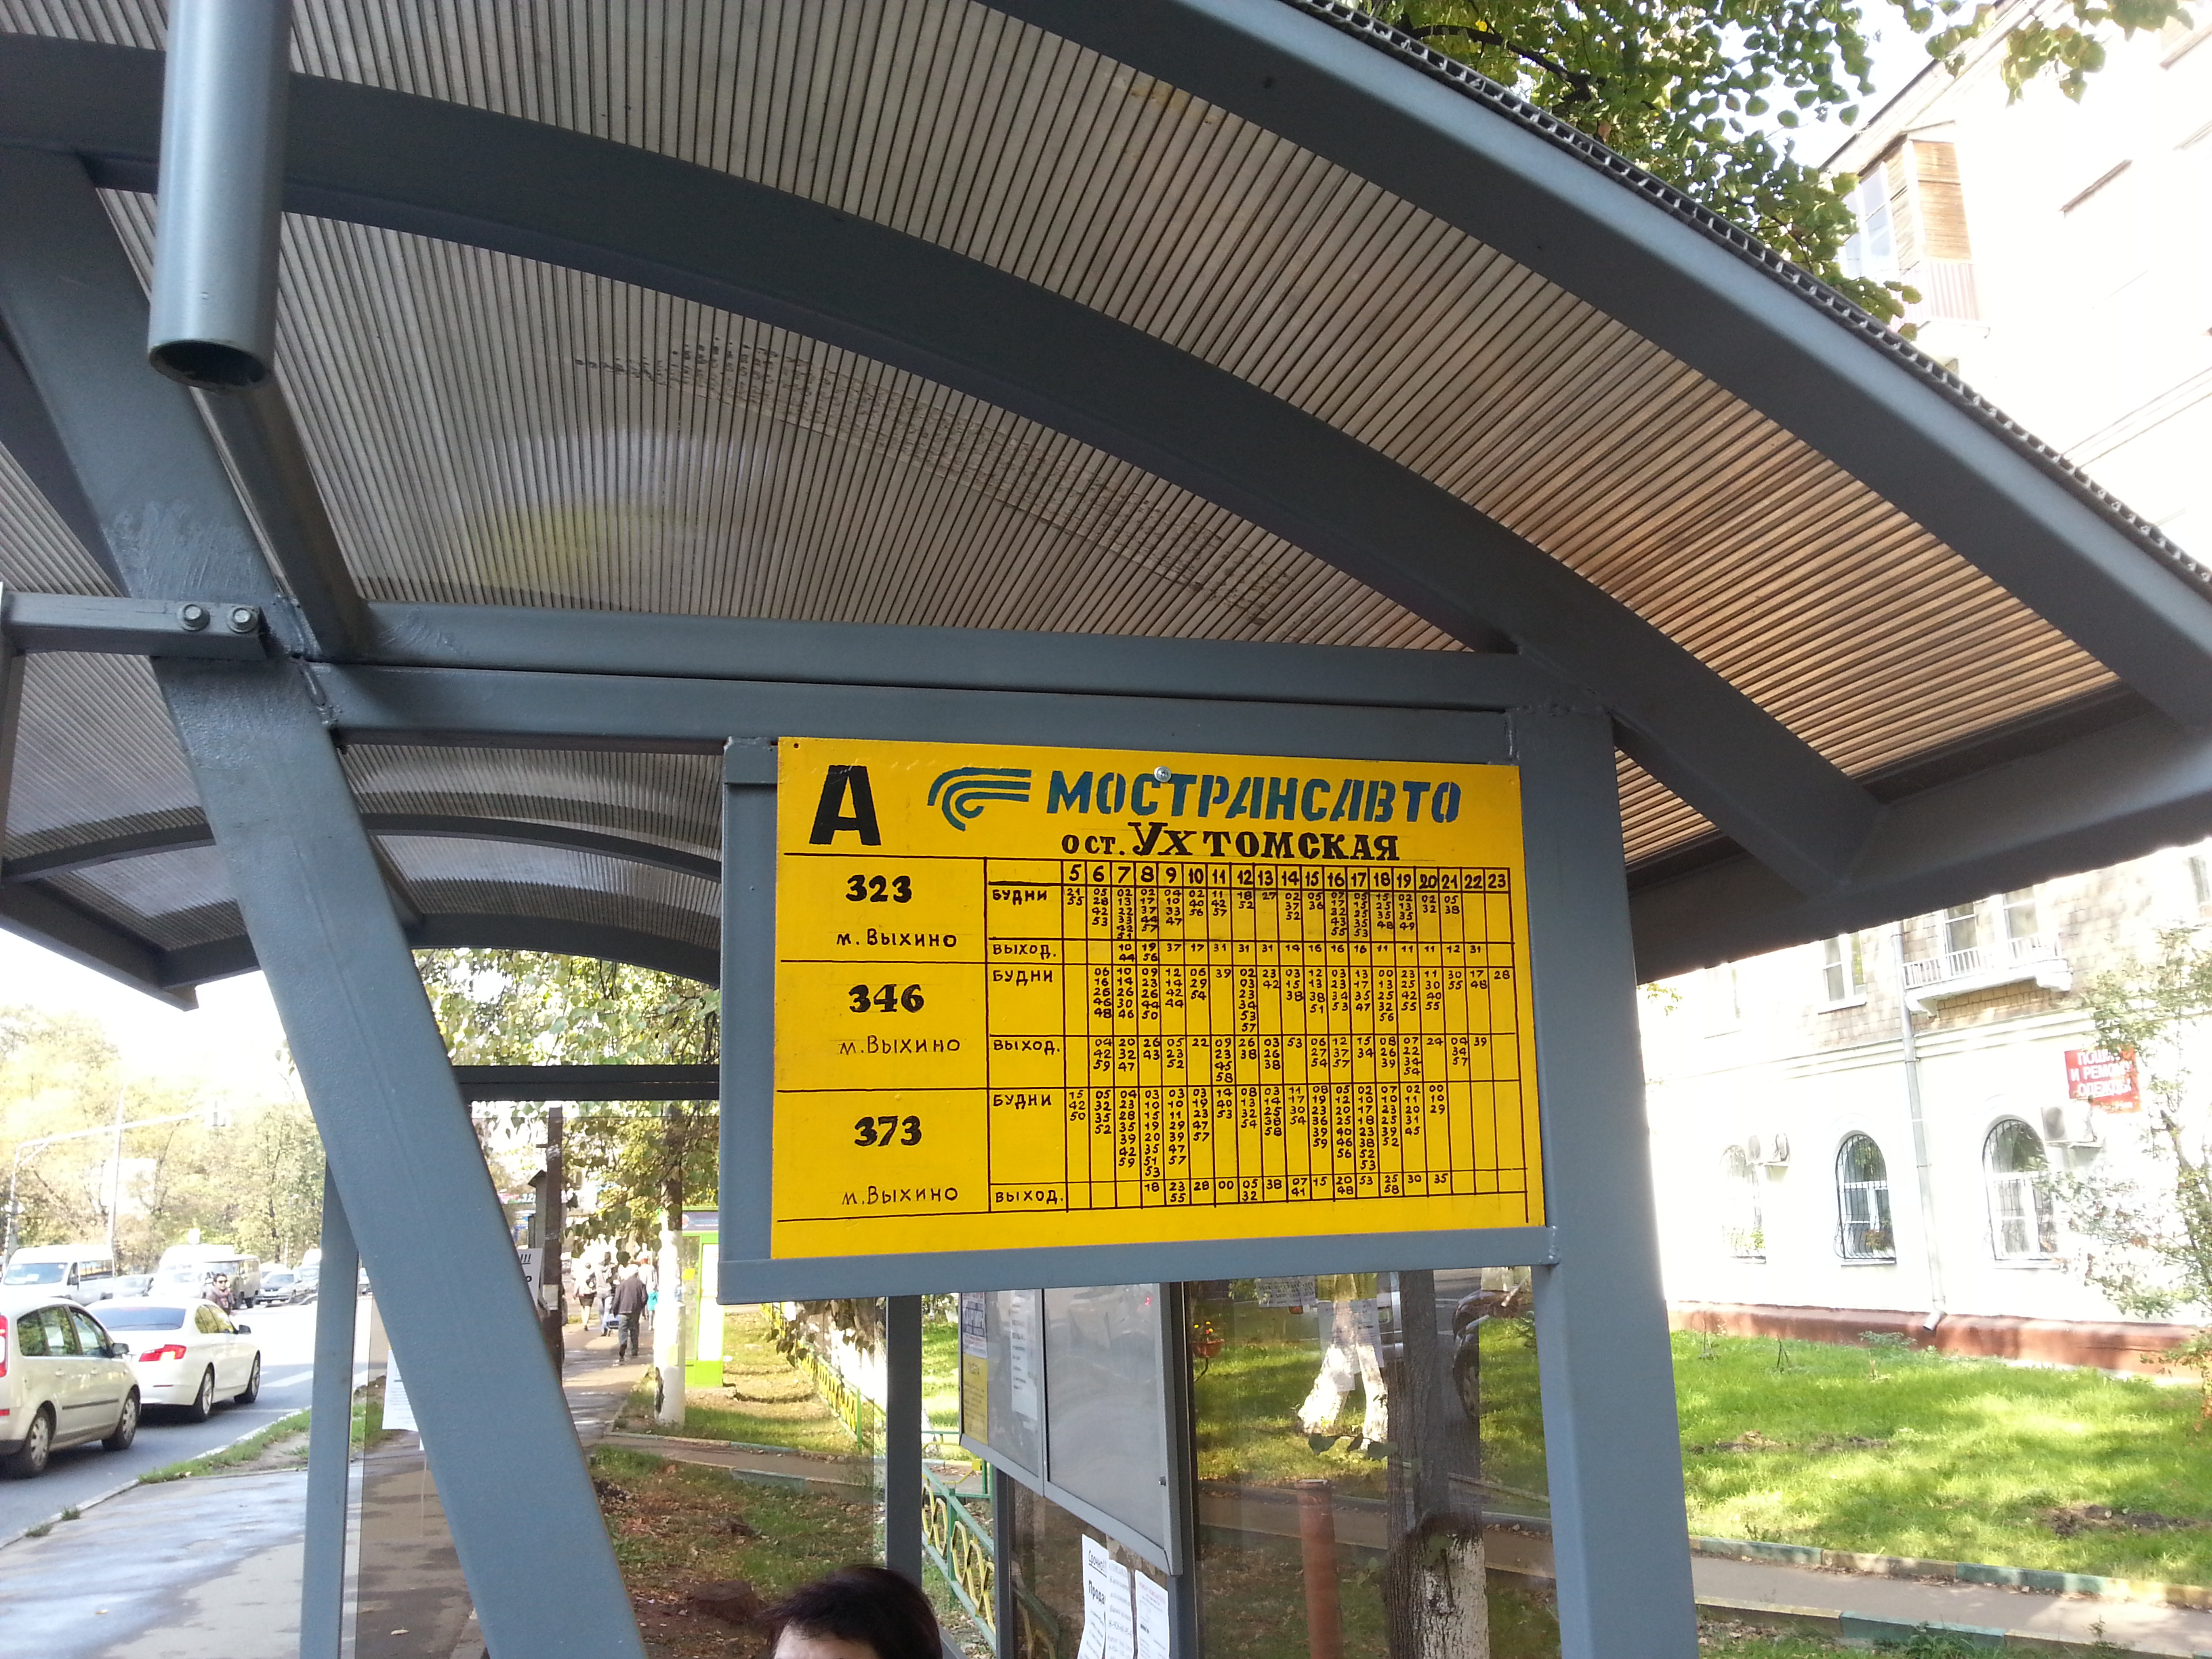 Расписание автобуса 346 коренева выхино. Автобус 346 Коренево-Выхино. Название автобусной остановки. Название остановки автобуса. Остановка в Люберцах.